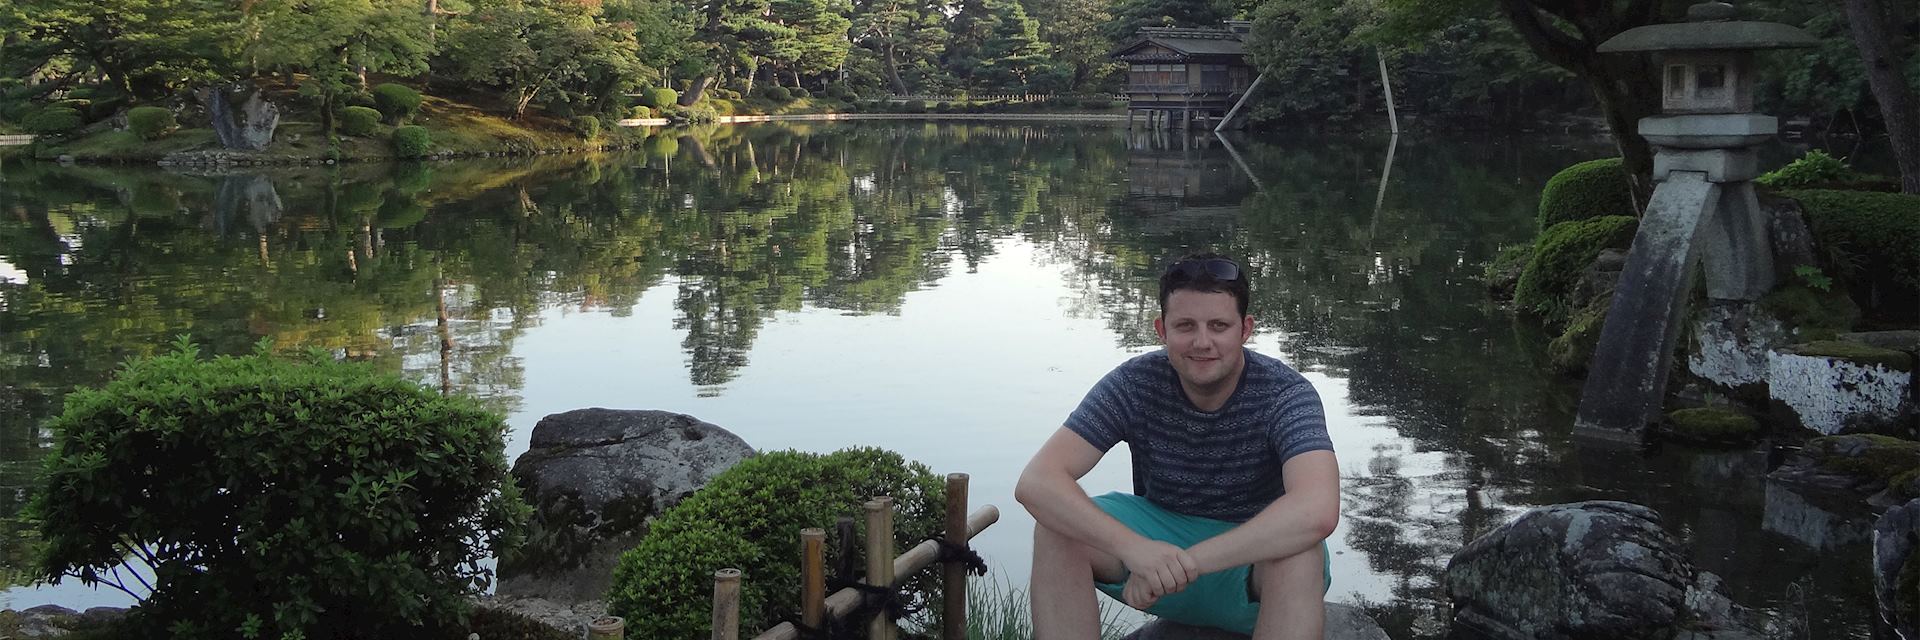 Jake visiting Kanrokuen Gardens, Kanazawa